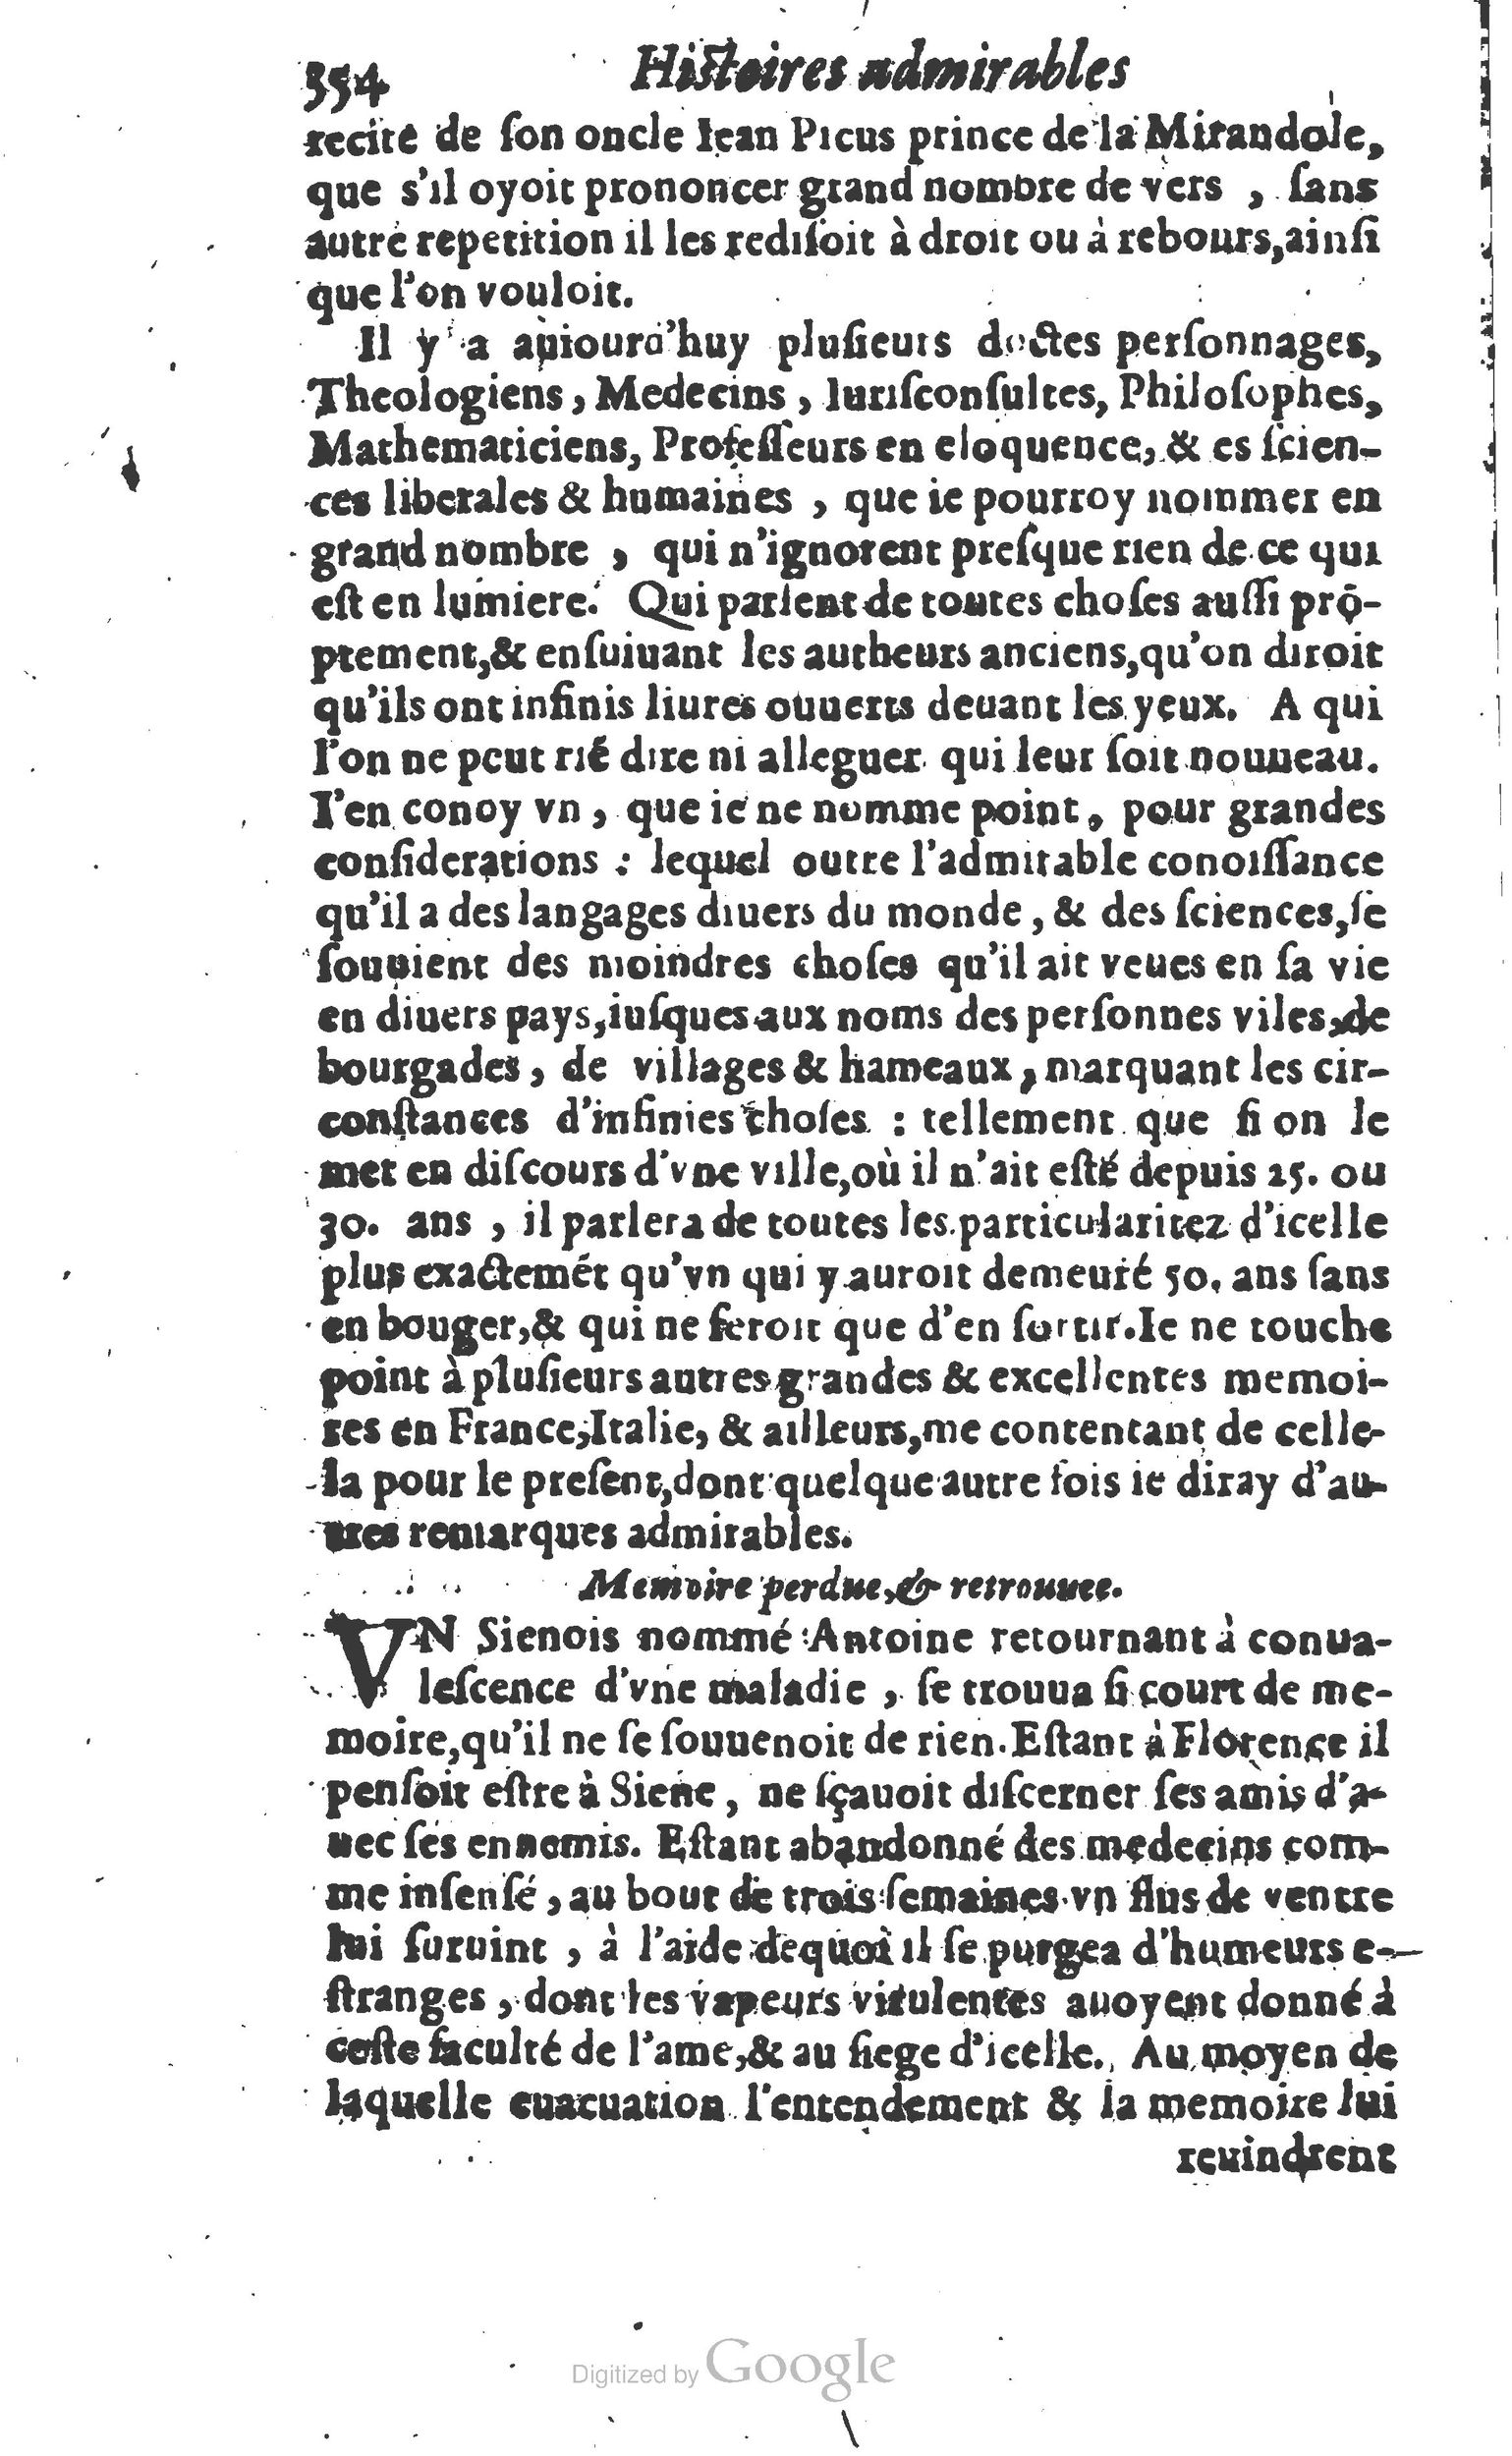 1610 Trésor d’histoires admirables et mémorables de nostre temps Marceau Princeton_Page_0375.jpg